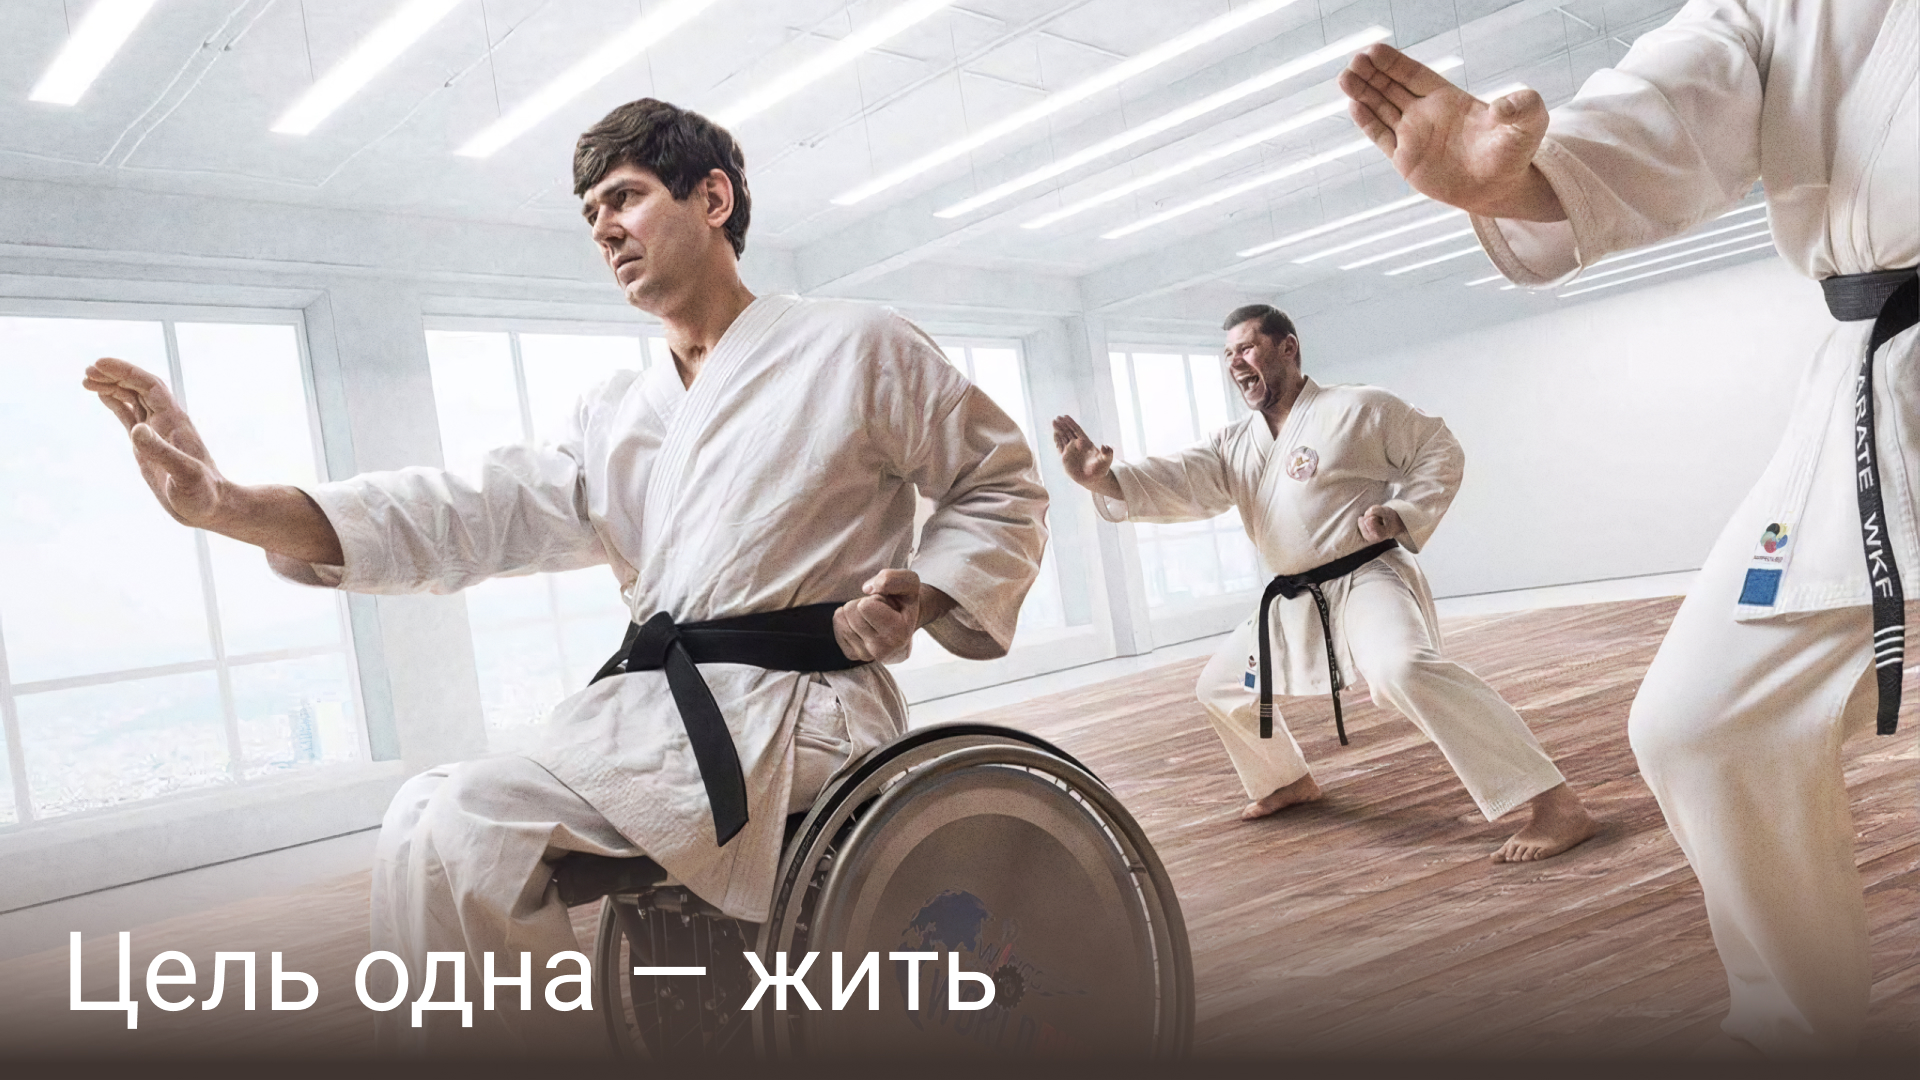 карате, паралимпийская сборная России, Паралимпийские игры